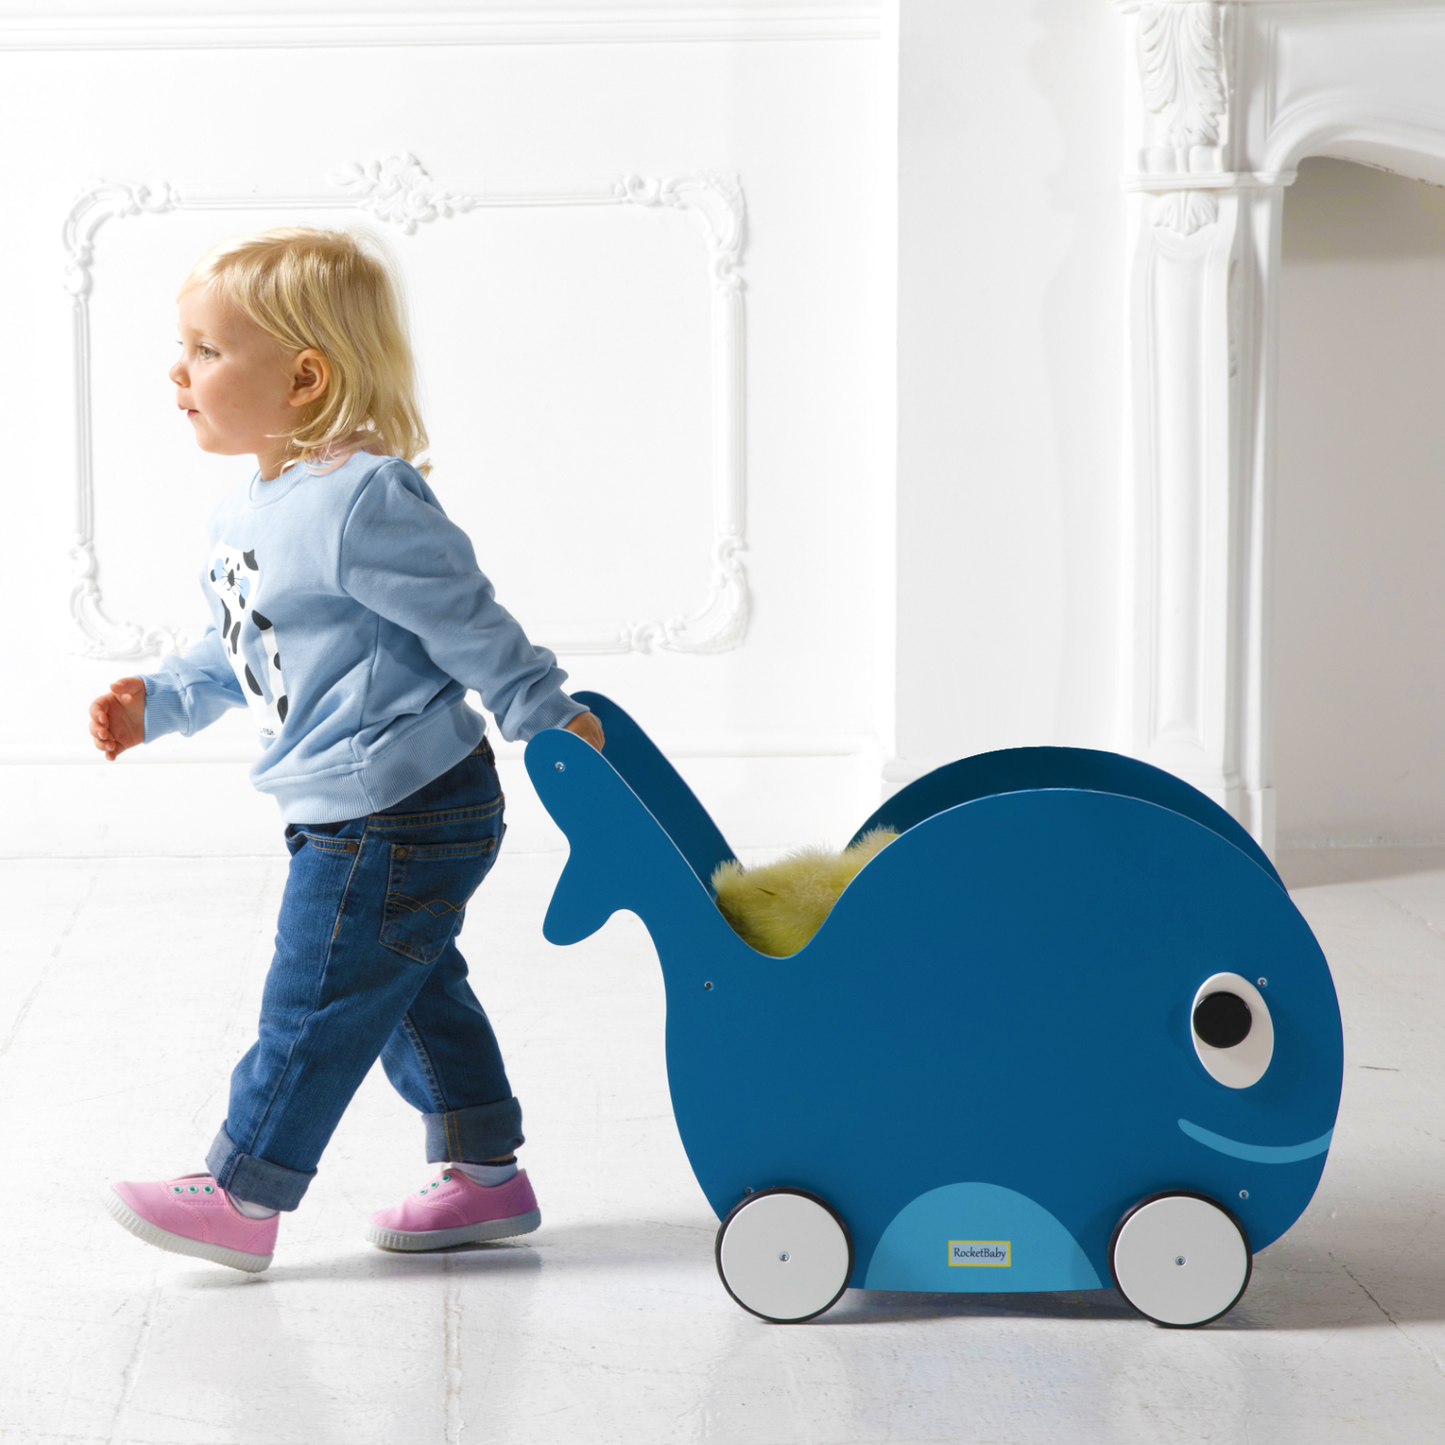 Juguete para empujar y guardar juguetes para niños pequeños Whale Universe Blue